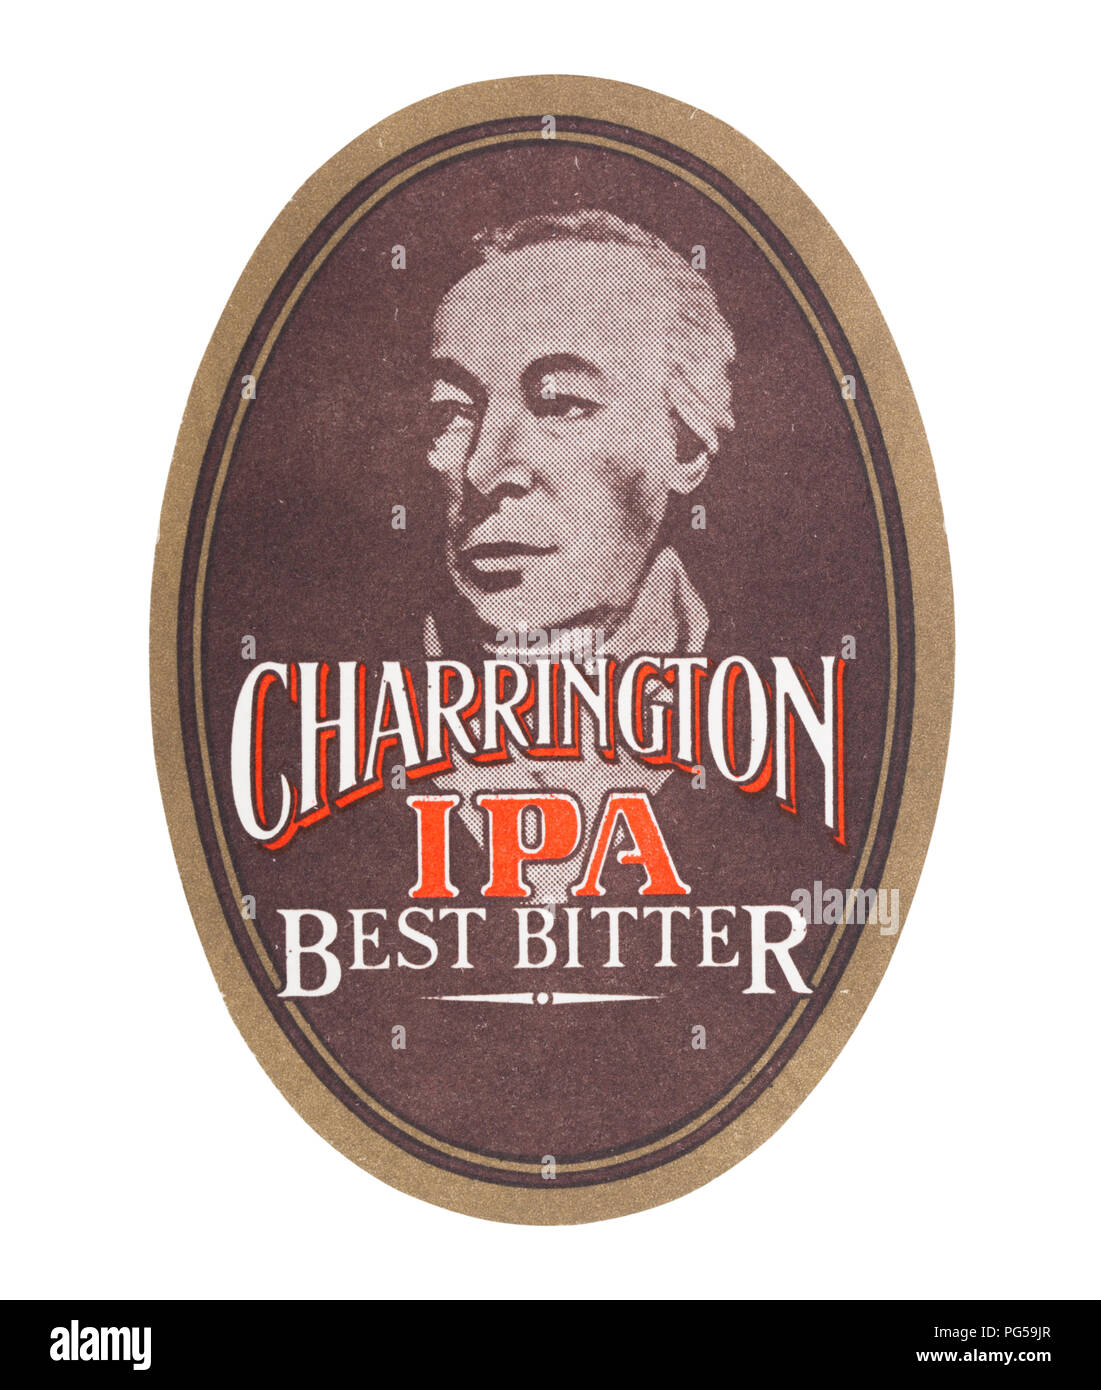 LONDON, Regno Unito - 22 agosto 2018: Charrington IPA Best Bitter birra carta beermat coaster isolati su sfondo bianco. Foto Stock